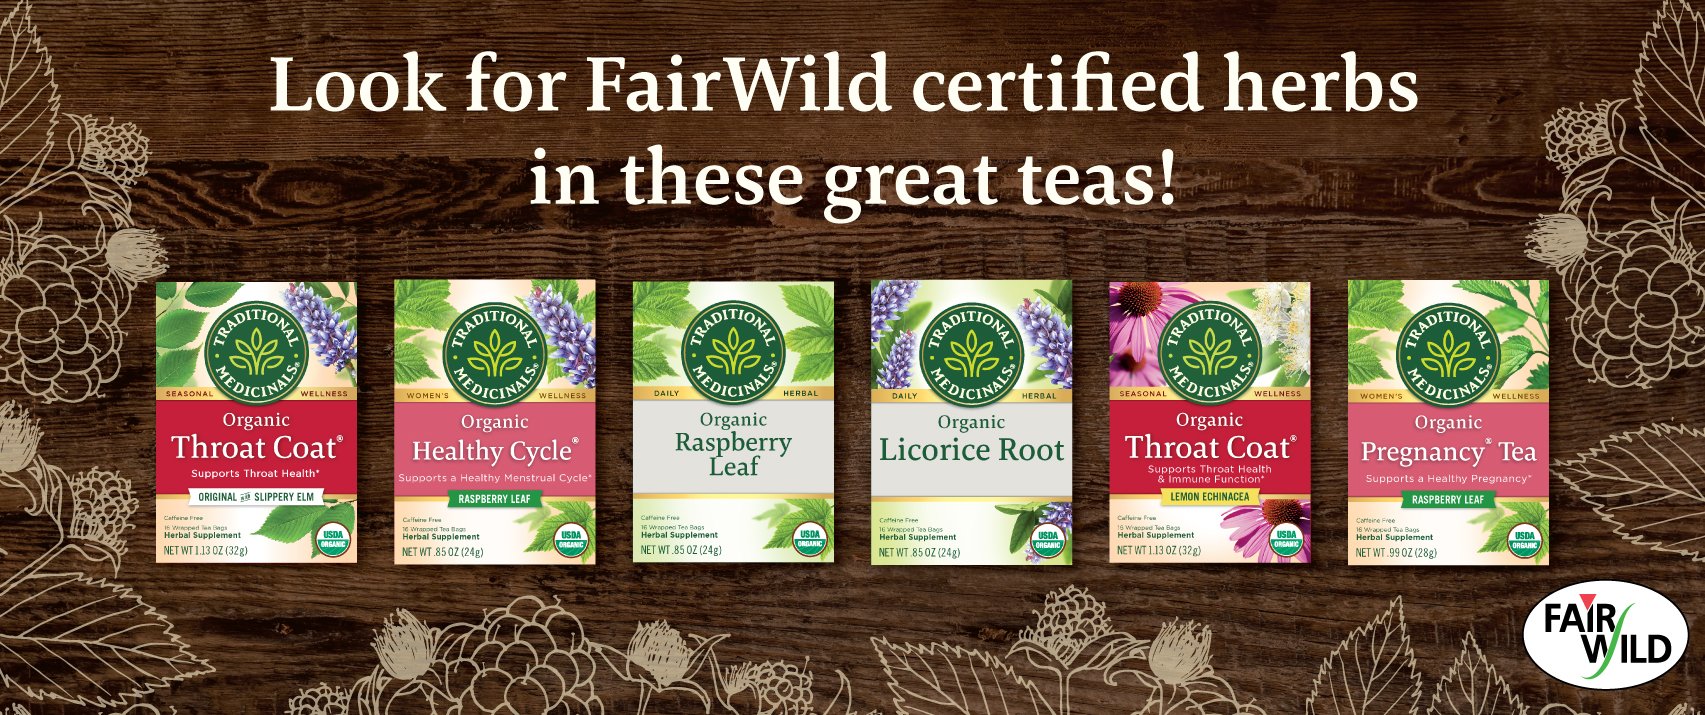 Fairwild certified herbs